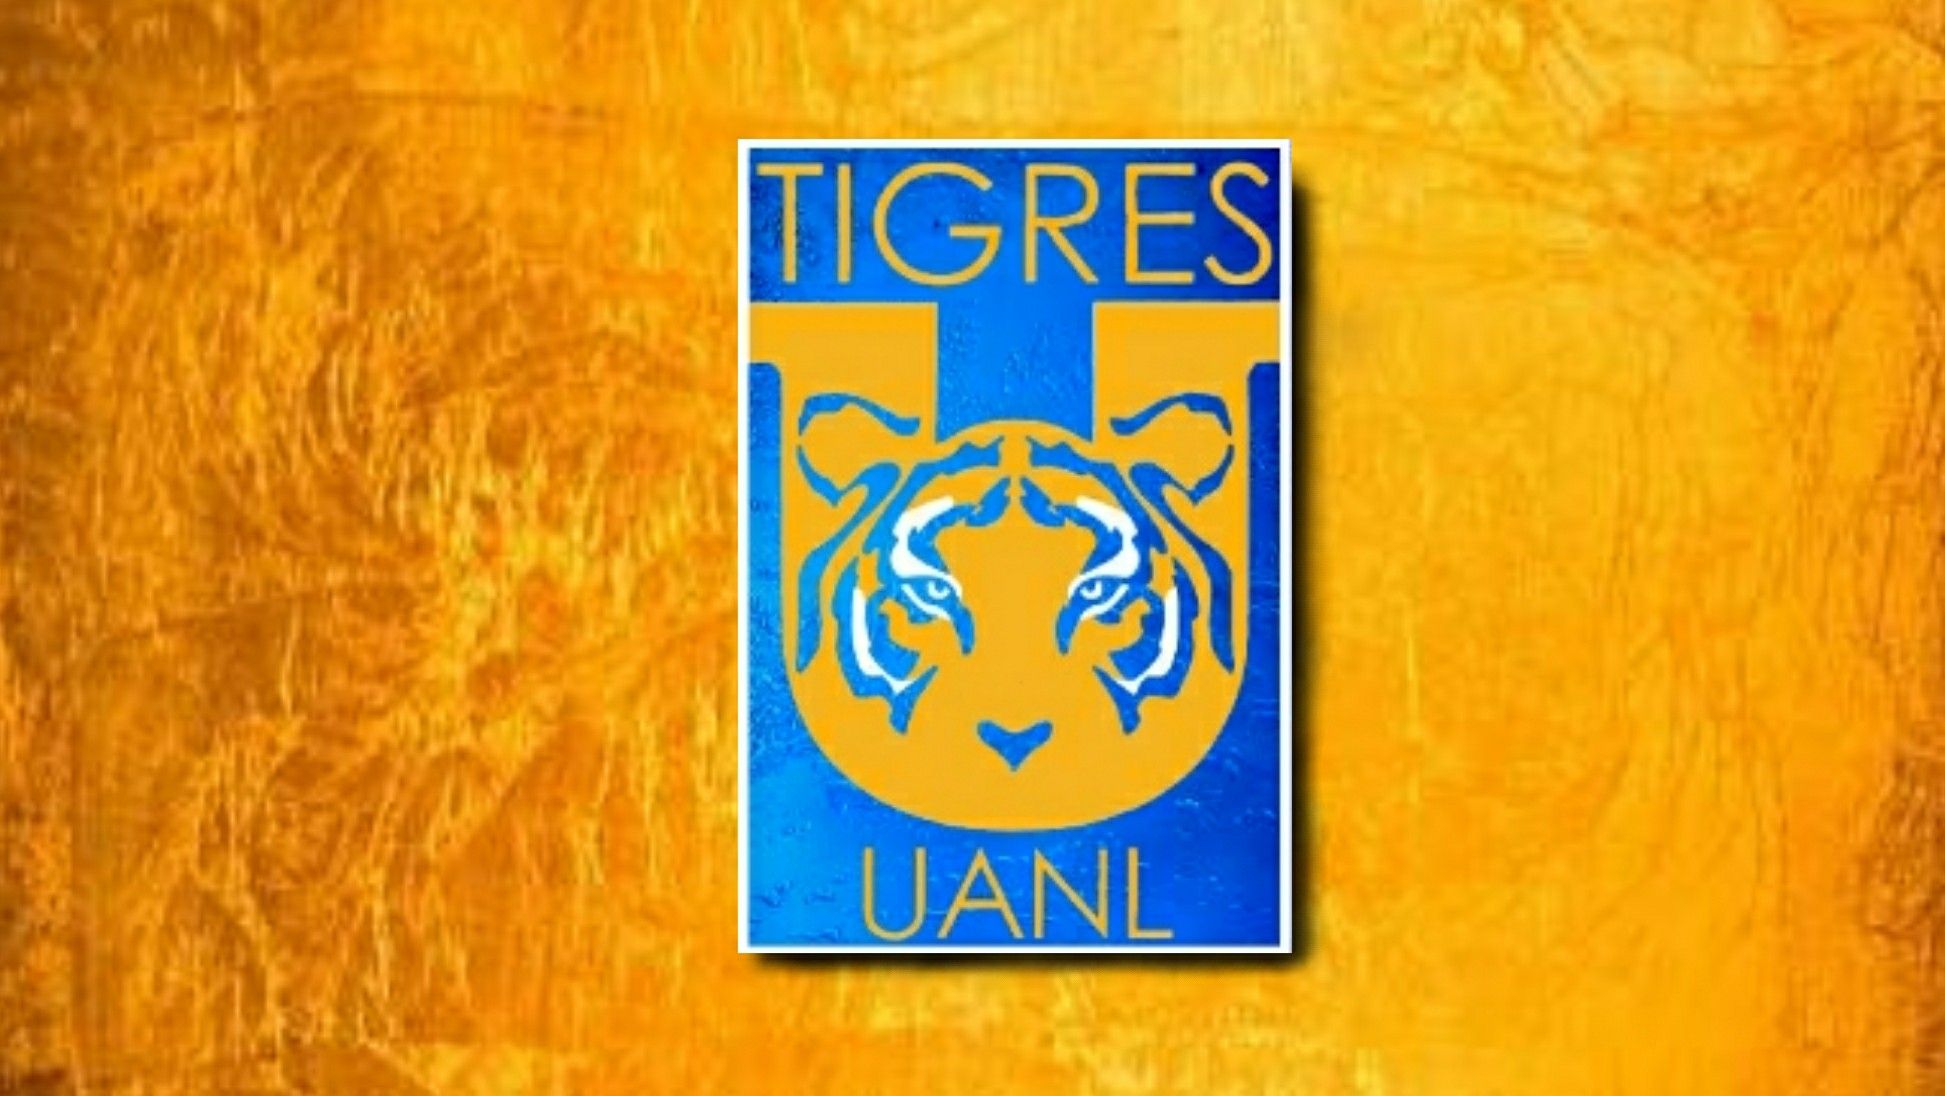 Tigres Uanl Wallpaper - Club Tigres , HD Wallpaper & Backgrounds